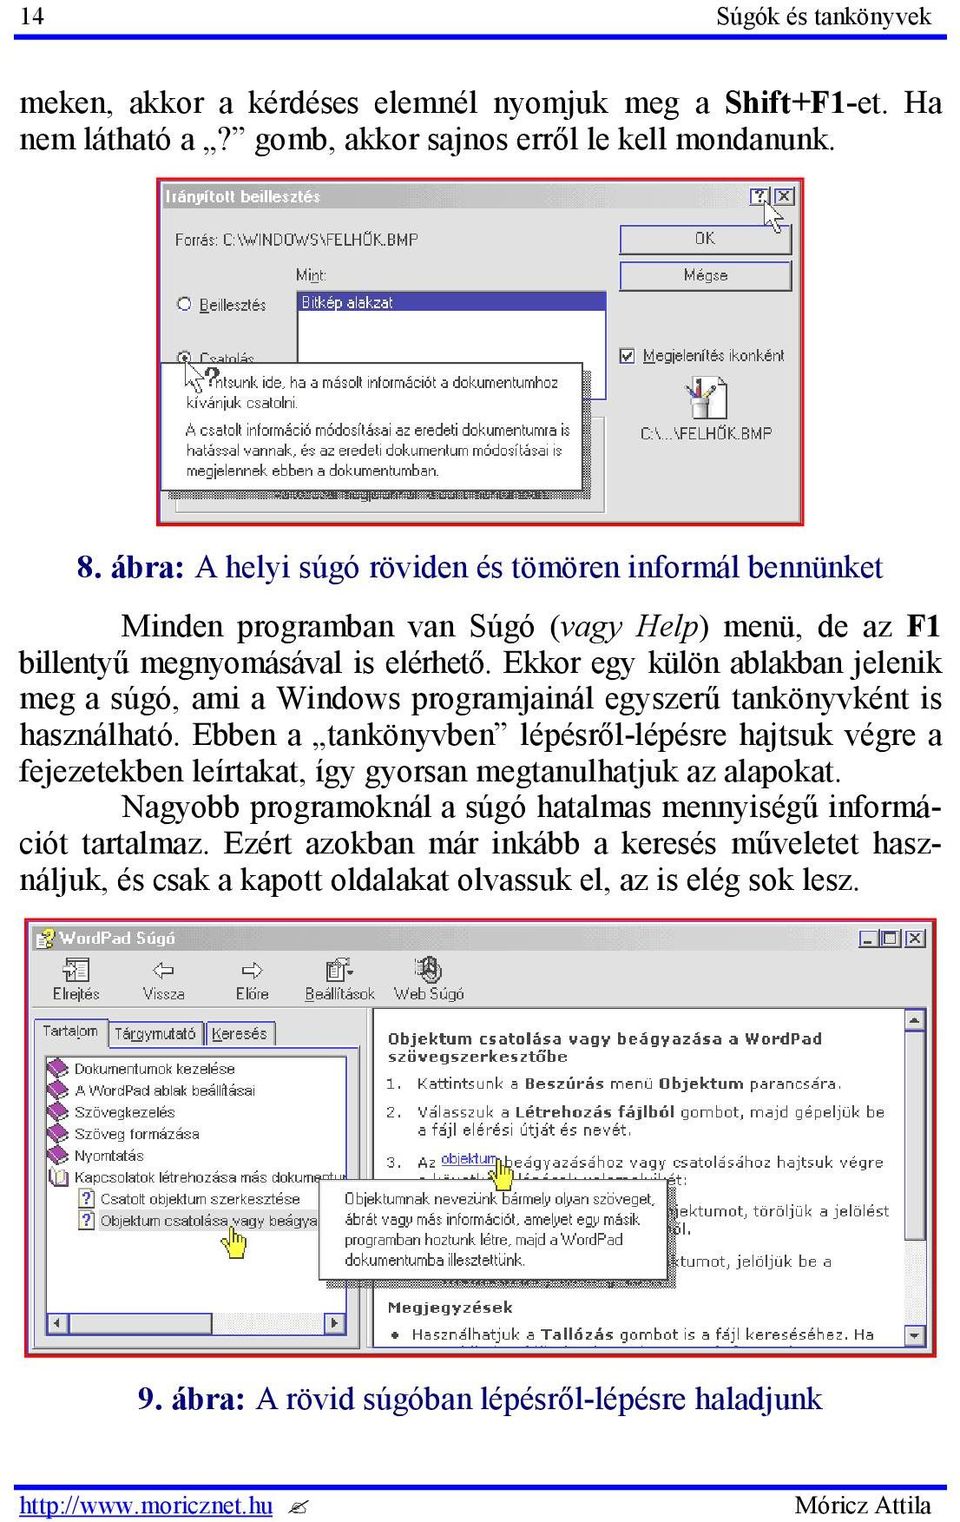 Ekkor egy külön ablakban jelenik meg a súgó, ami a Windows programjainál egyszerű tankönyvként is használható.